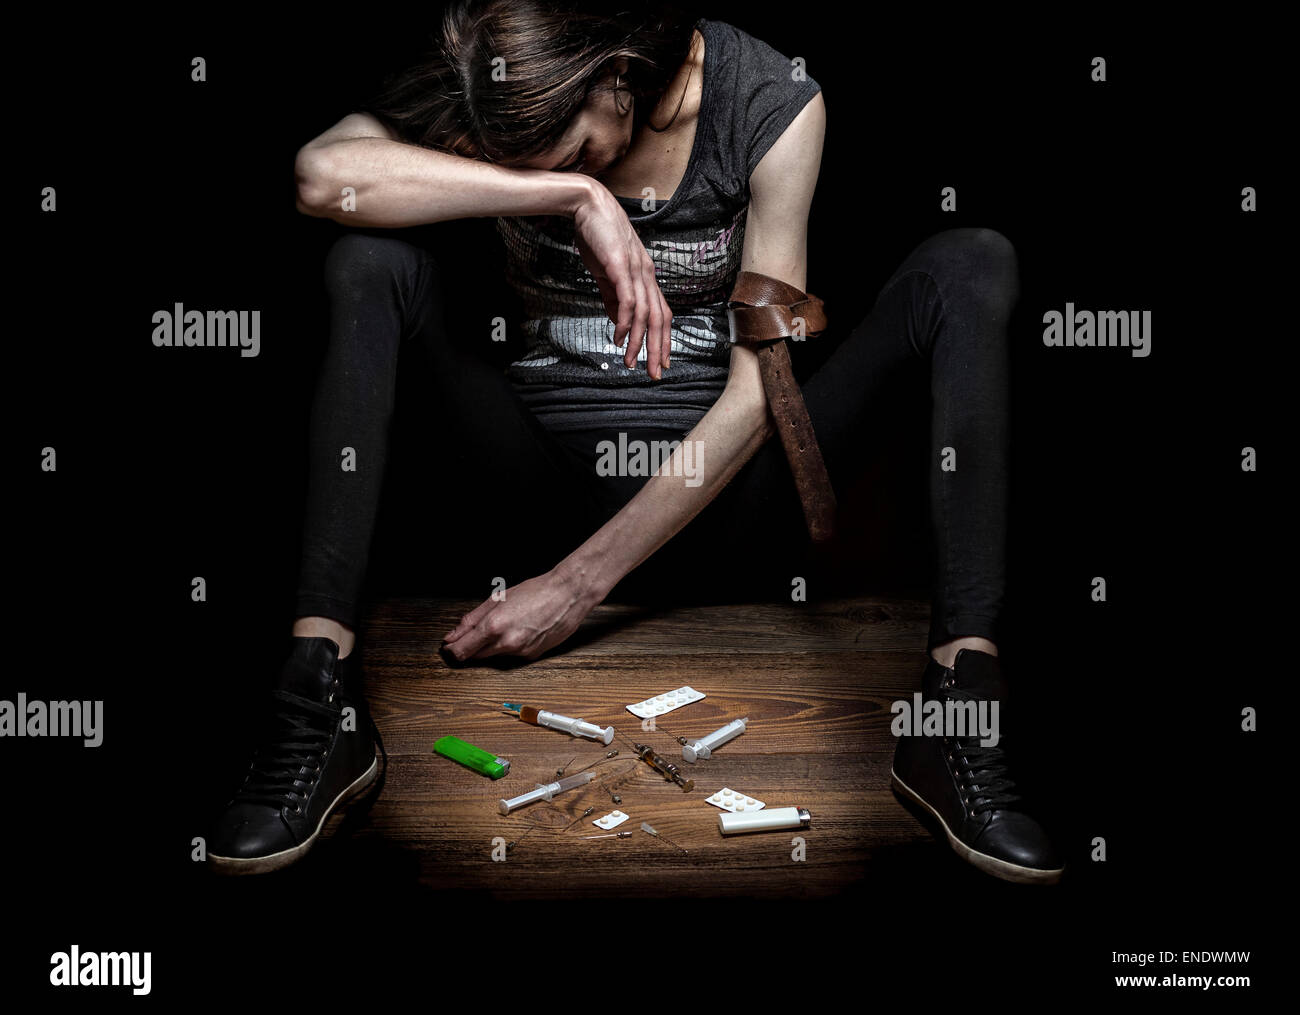 Jeune femme pose comme toxicomane, concept photo contre mur noir. Fort contraste et texture pour renforcer le message. Banque D'Images